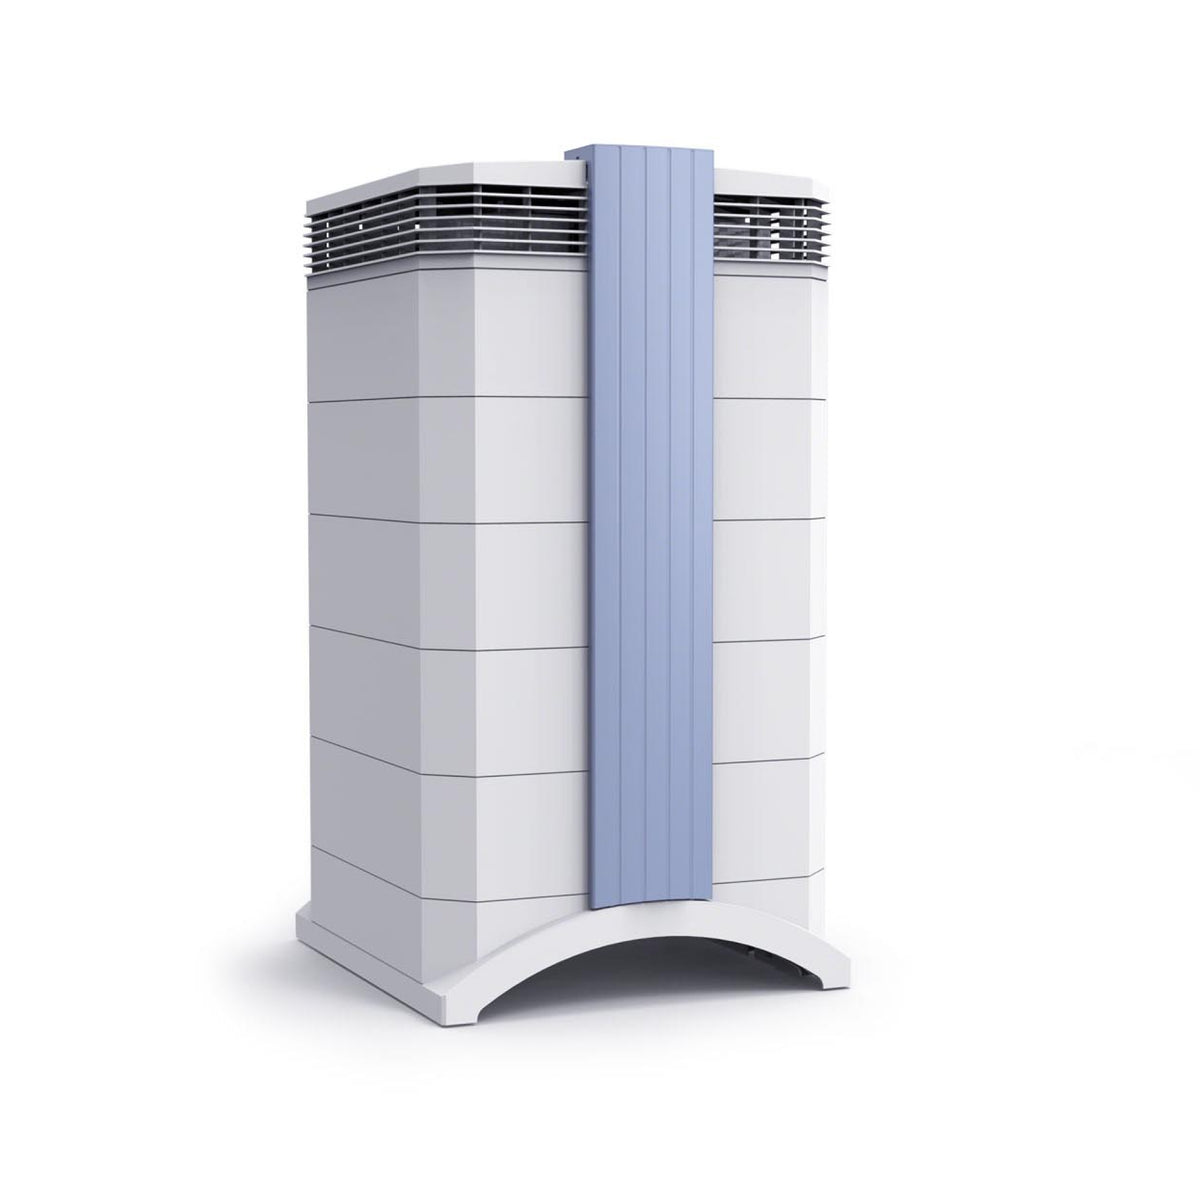 IQAir GC Series air purifier angle